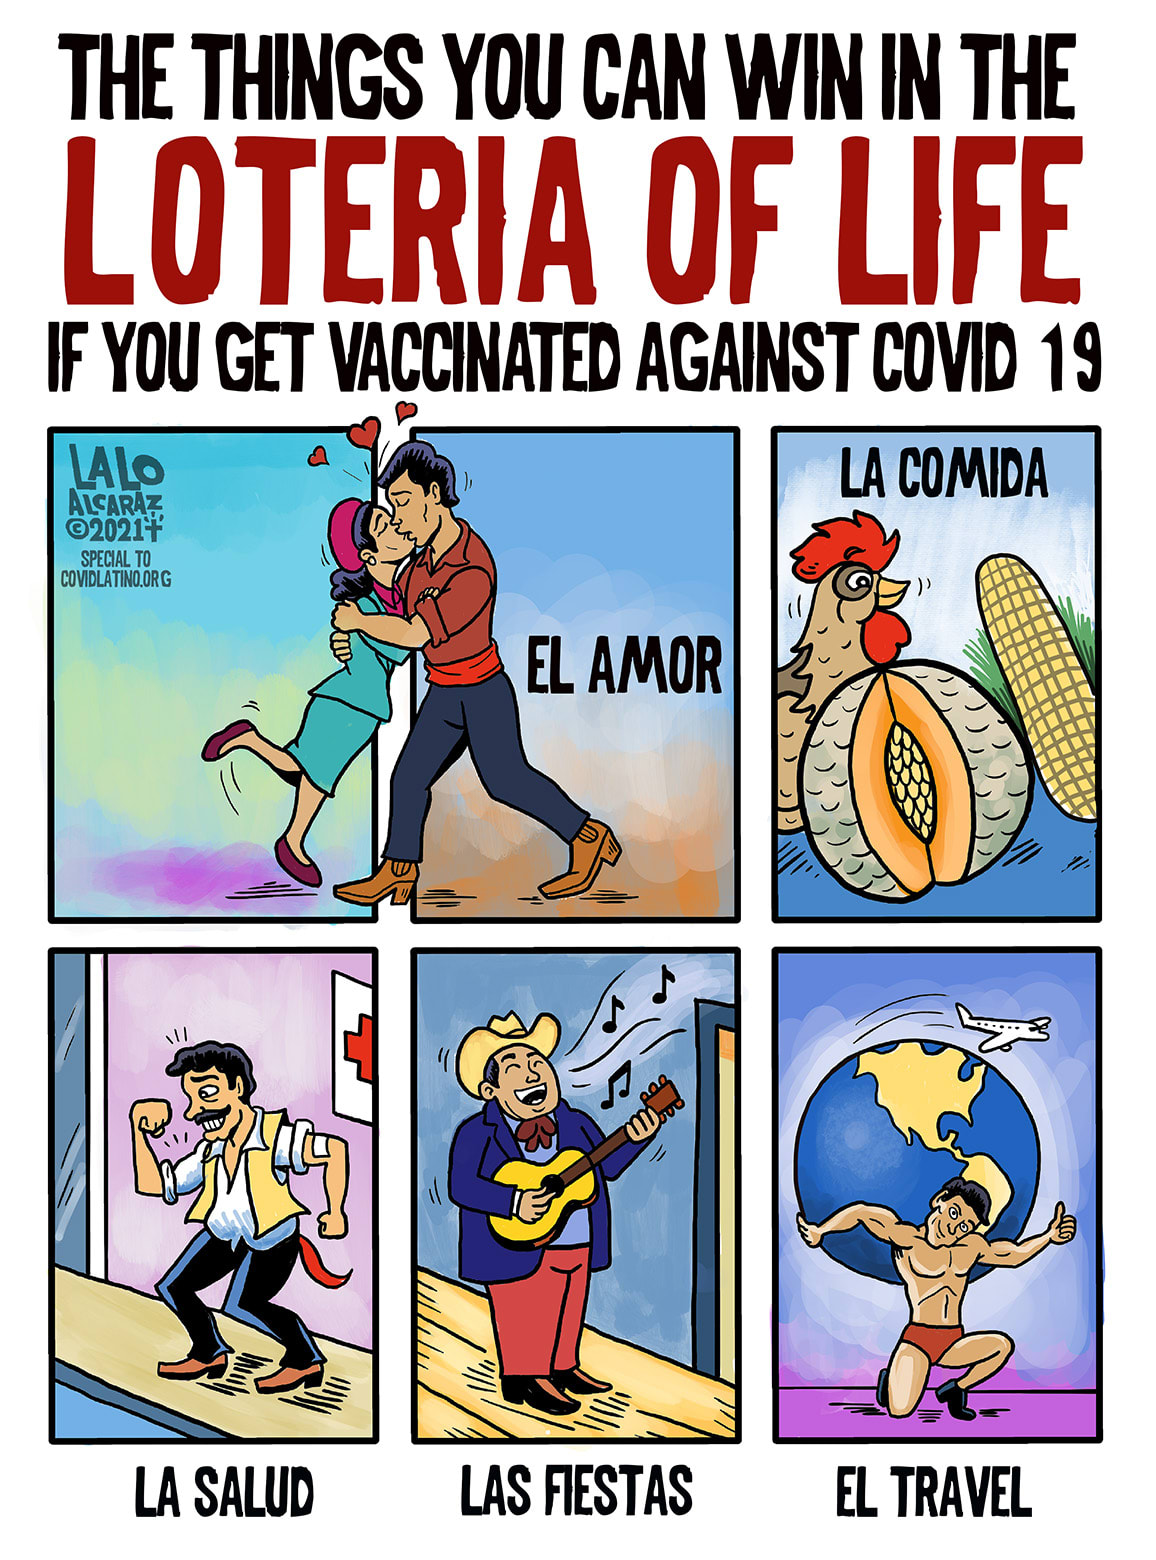 Political cartoonist Lalo Alcaraz becomes first Latino to win prestigious  prize